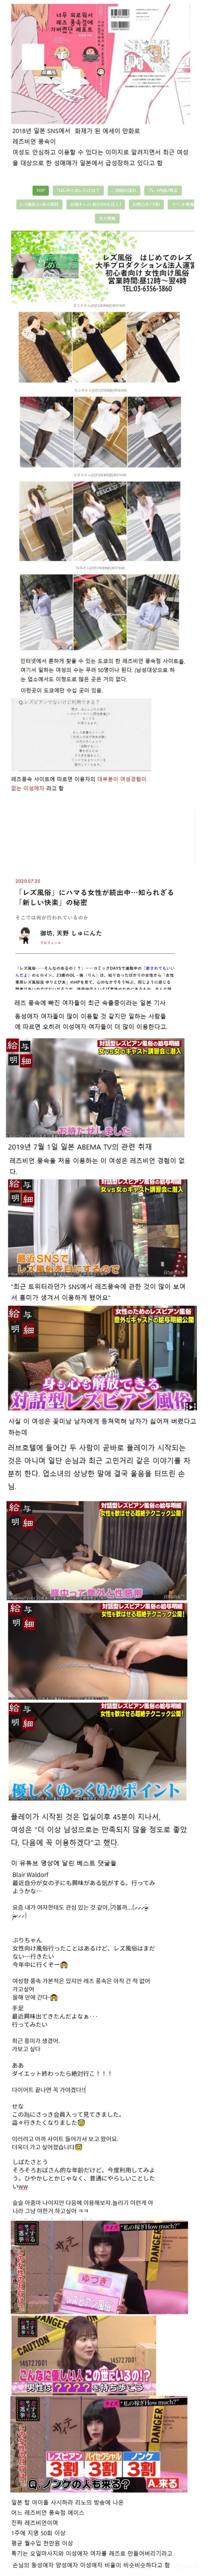 일본에서 유행 중인 신종 성매매 | 인스티즈